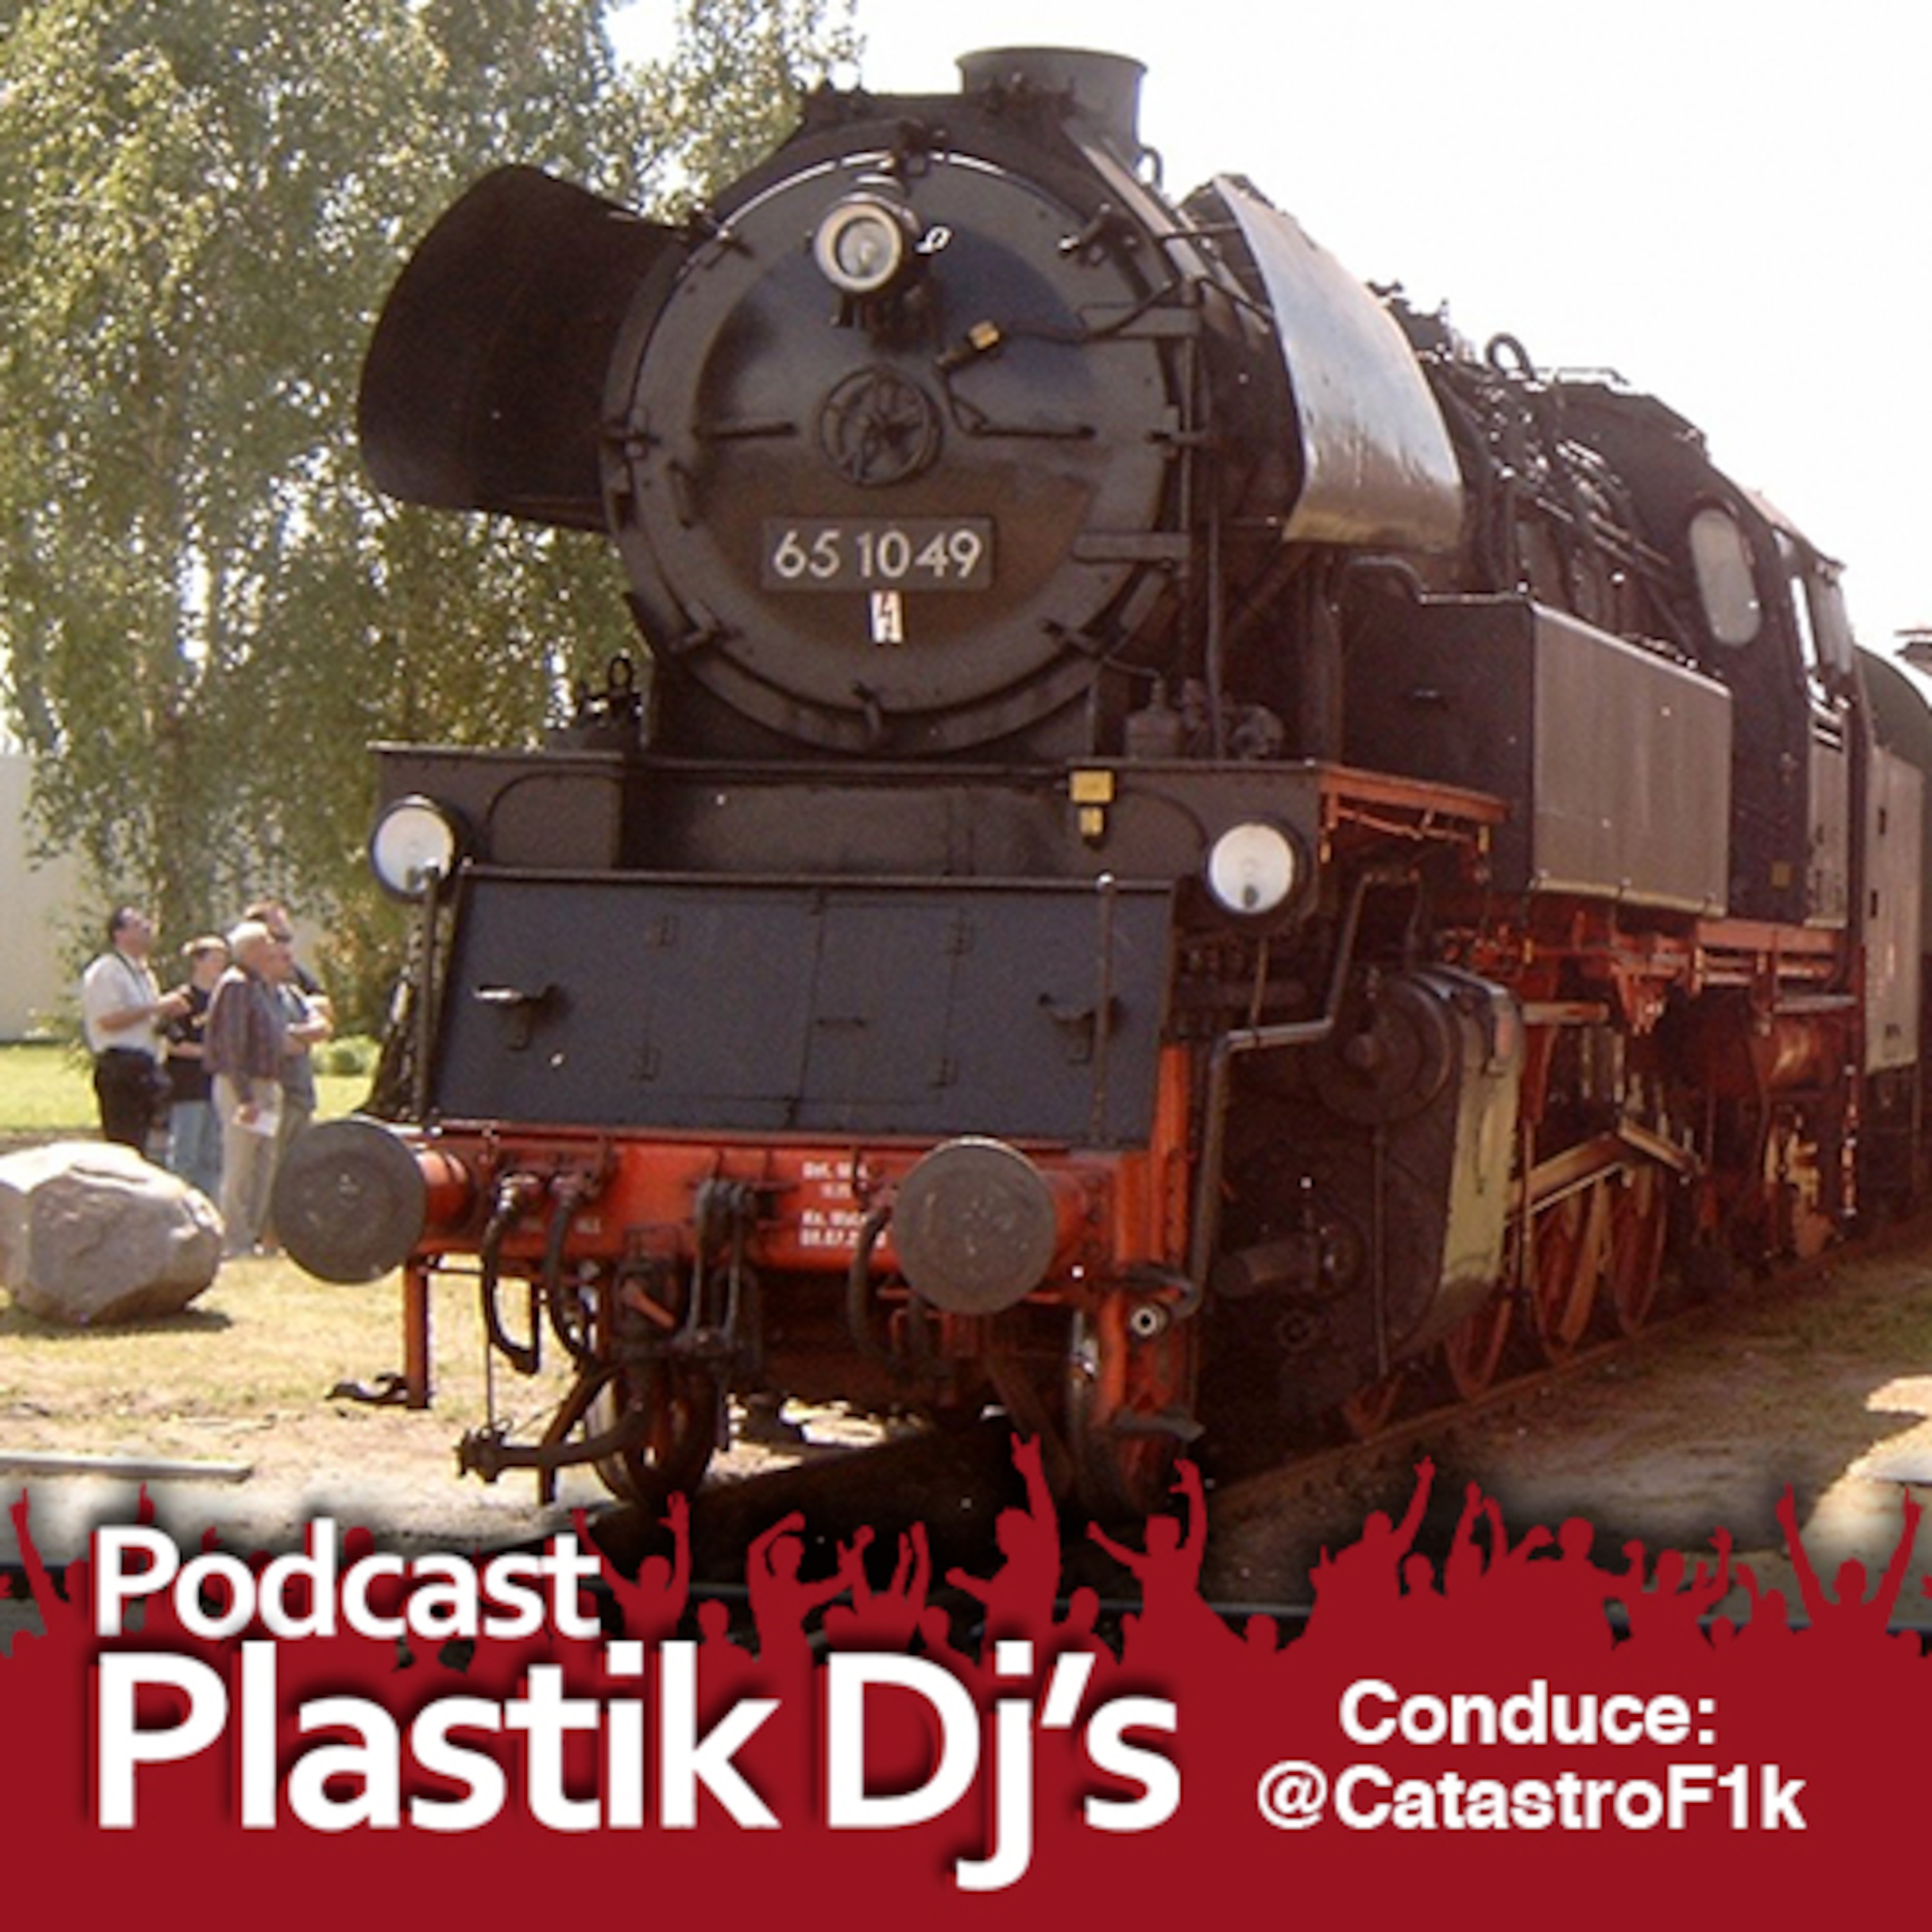 Plastik Dj's' Podcast